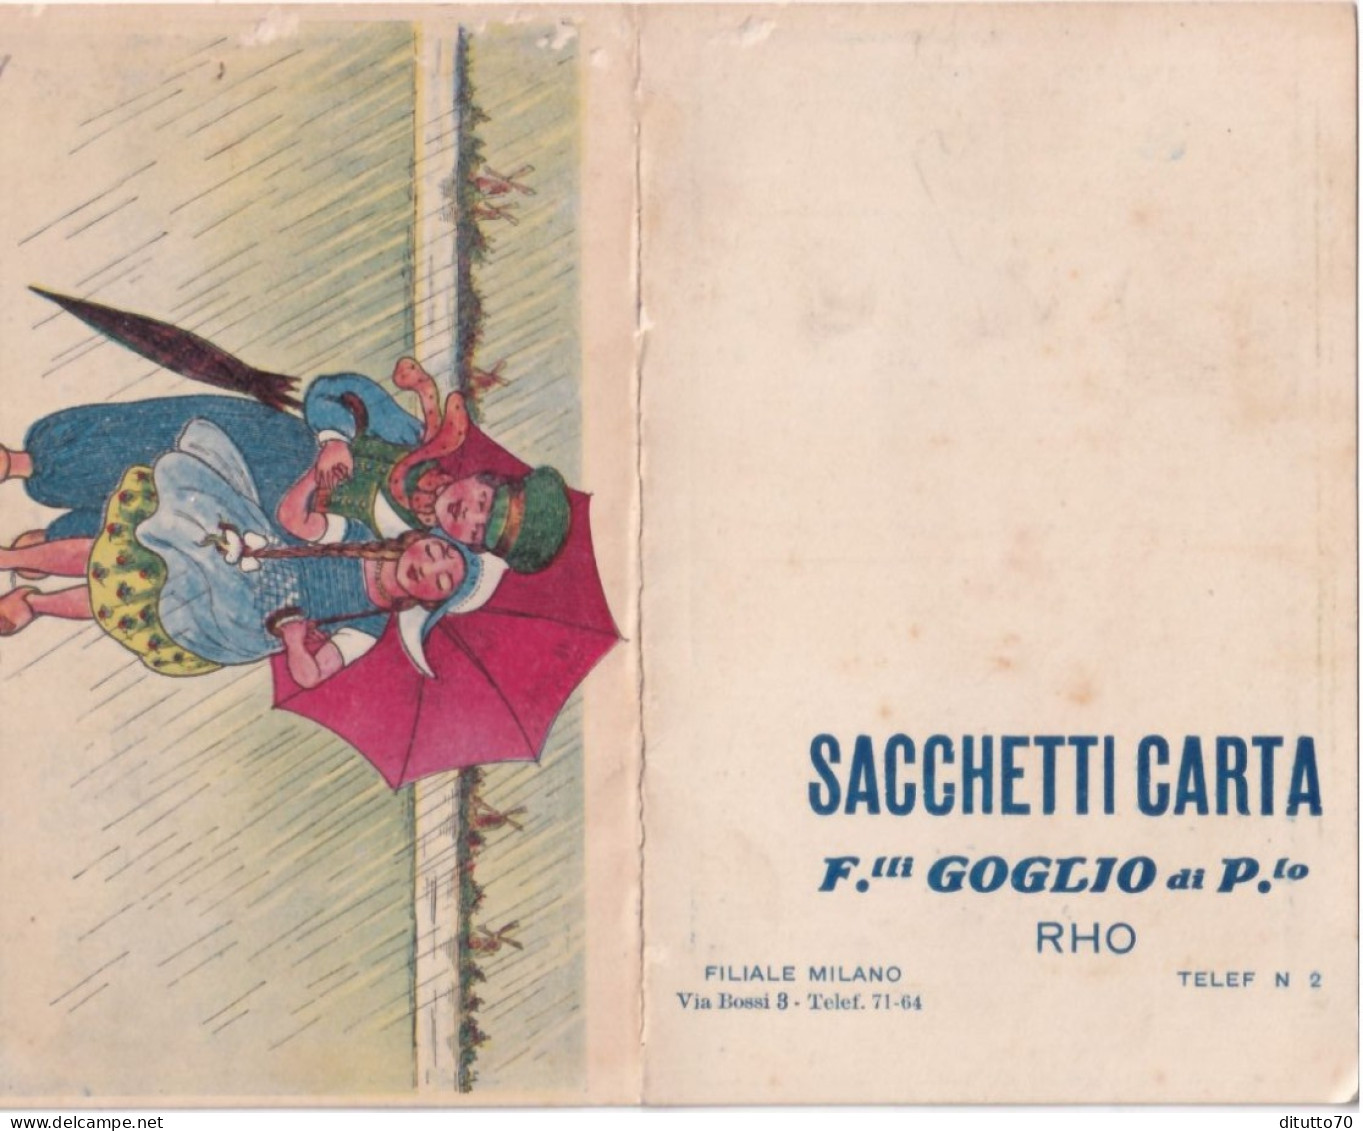 Calendarietto - Sacchetti Carta - F.lli Goglio Di P.lo - Rho - Anno 1915 - Petit Format : 1901-20